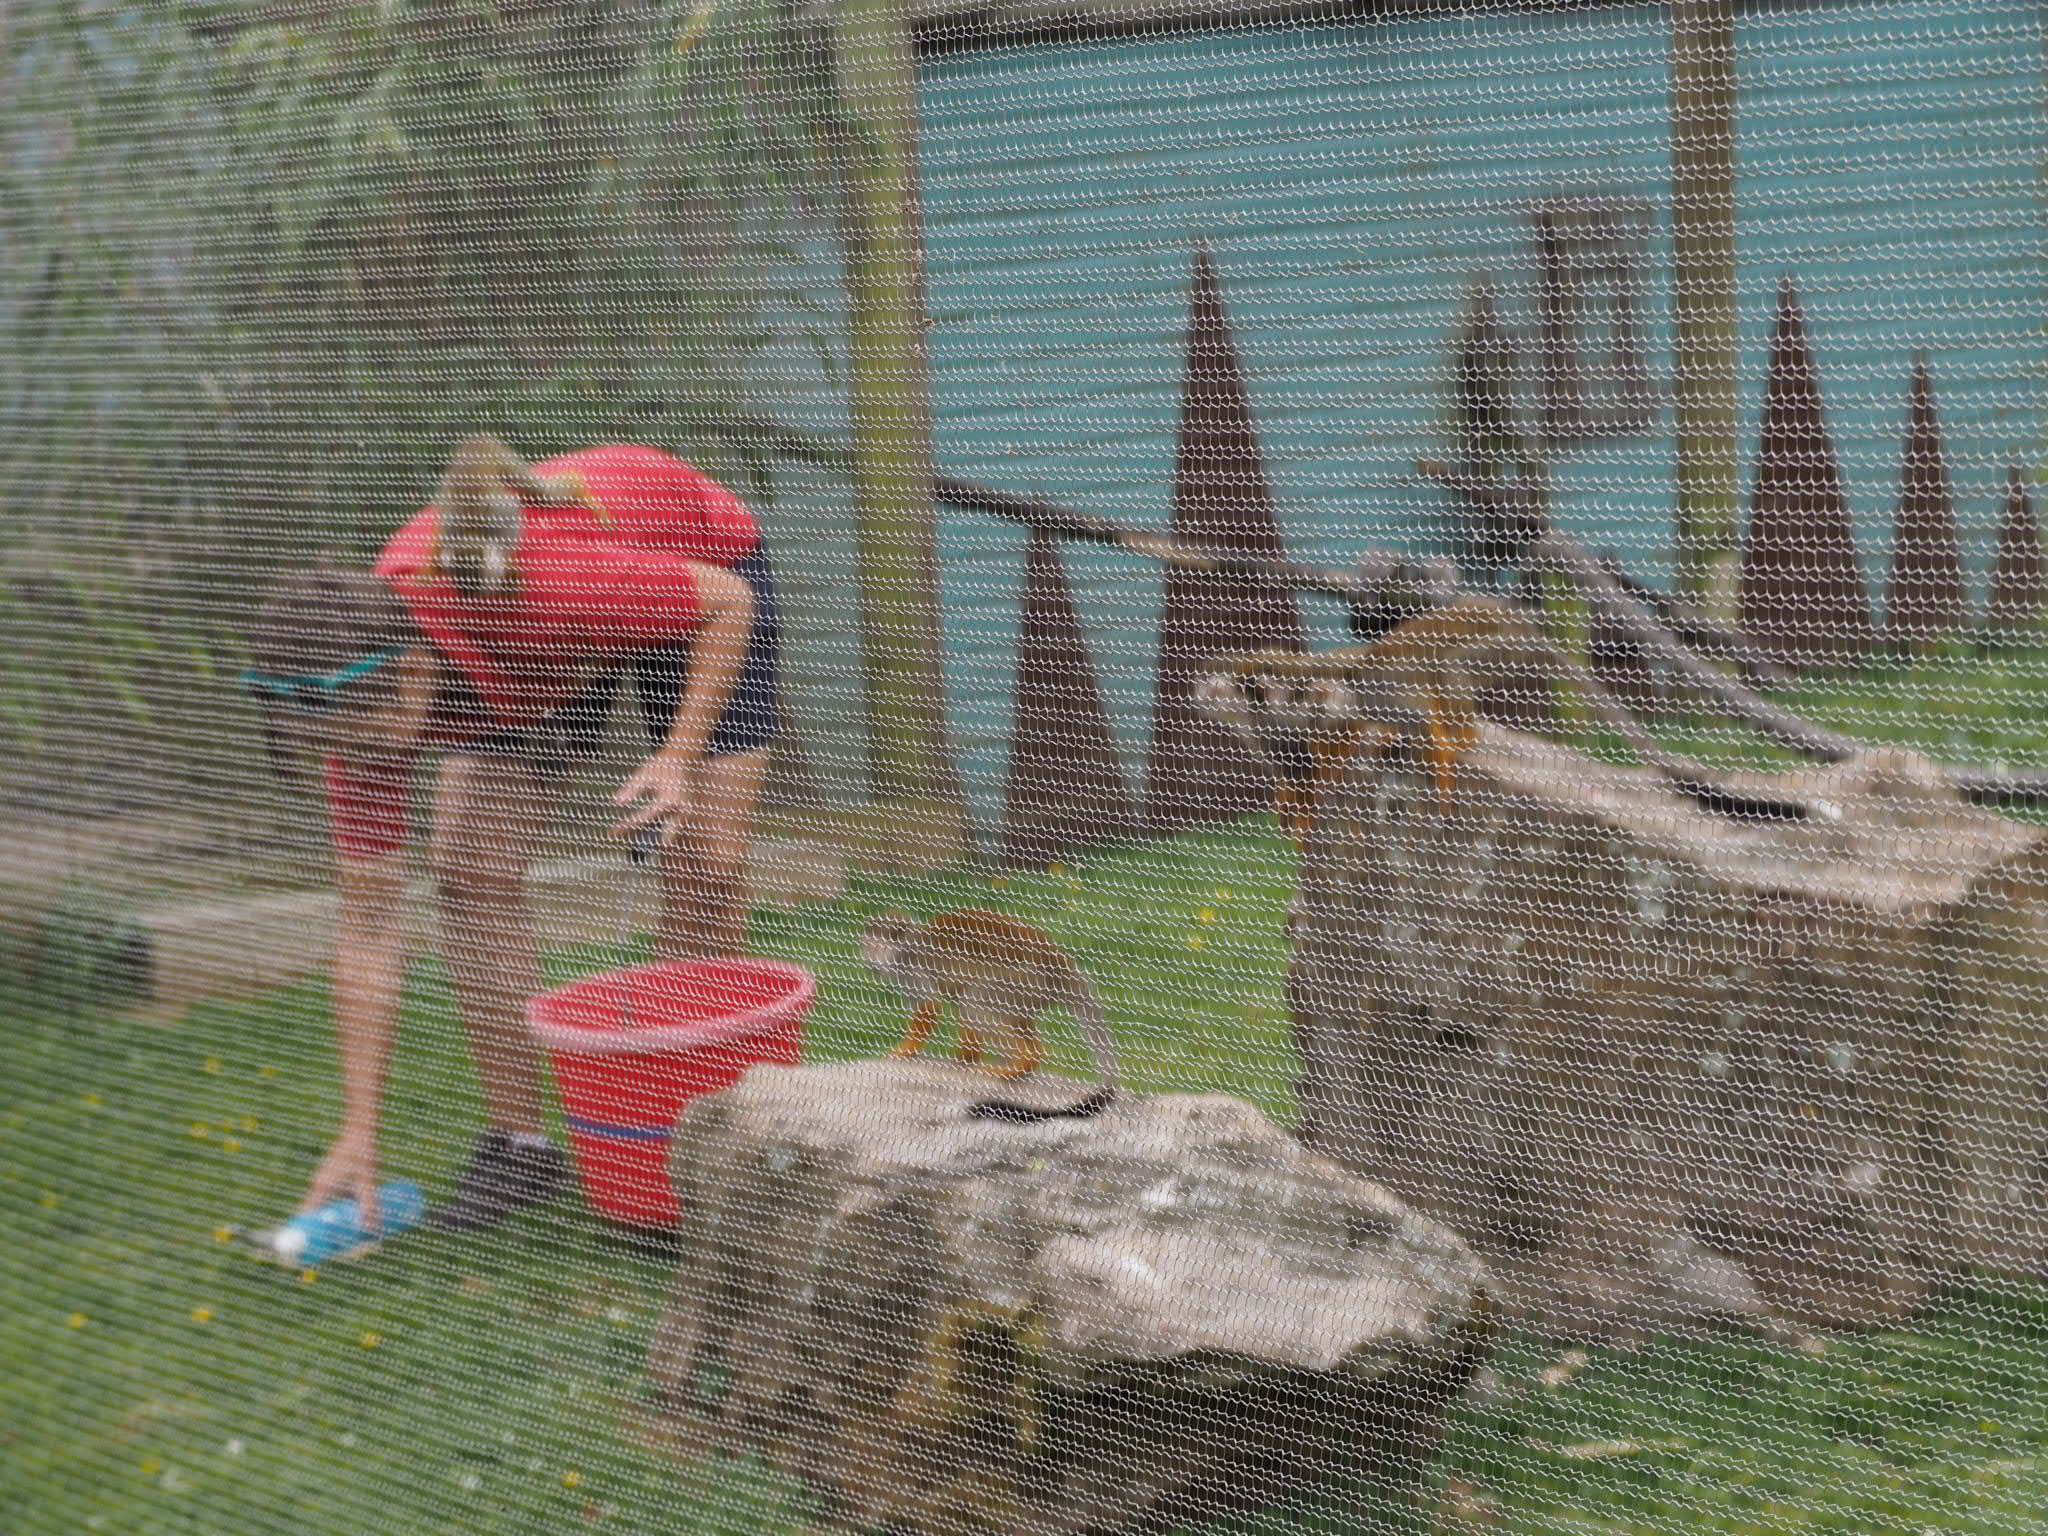 Zoo keeper feeding the squirrel monkeys at Folly Farm